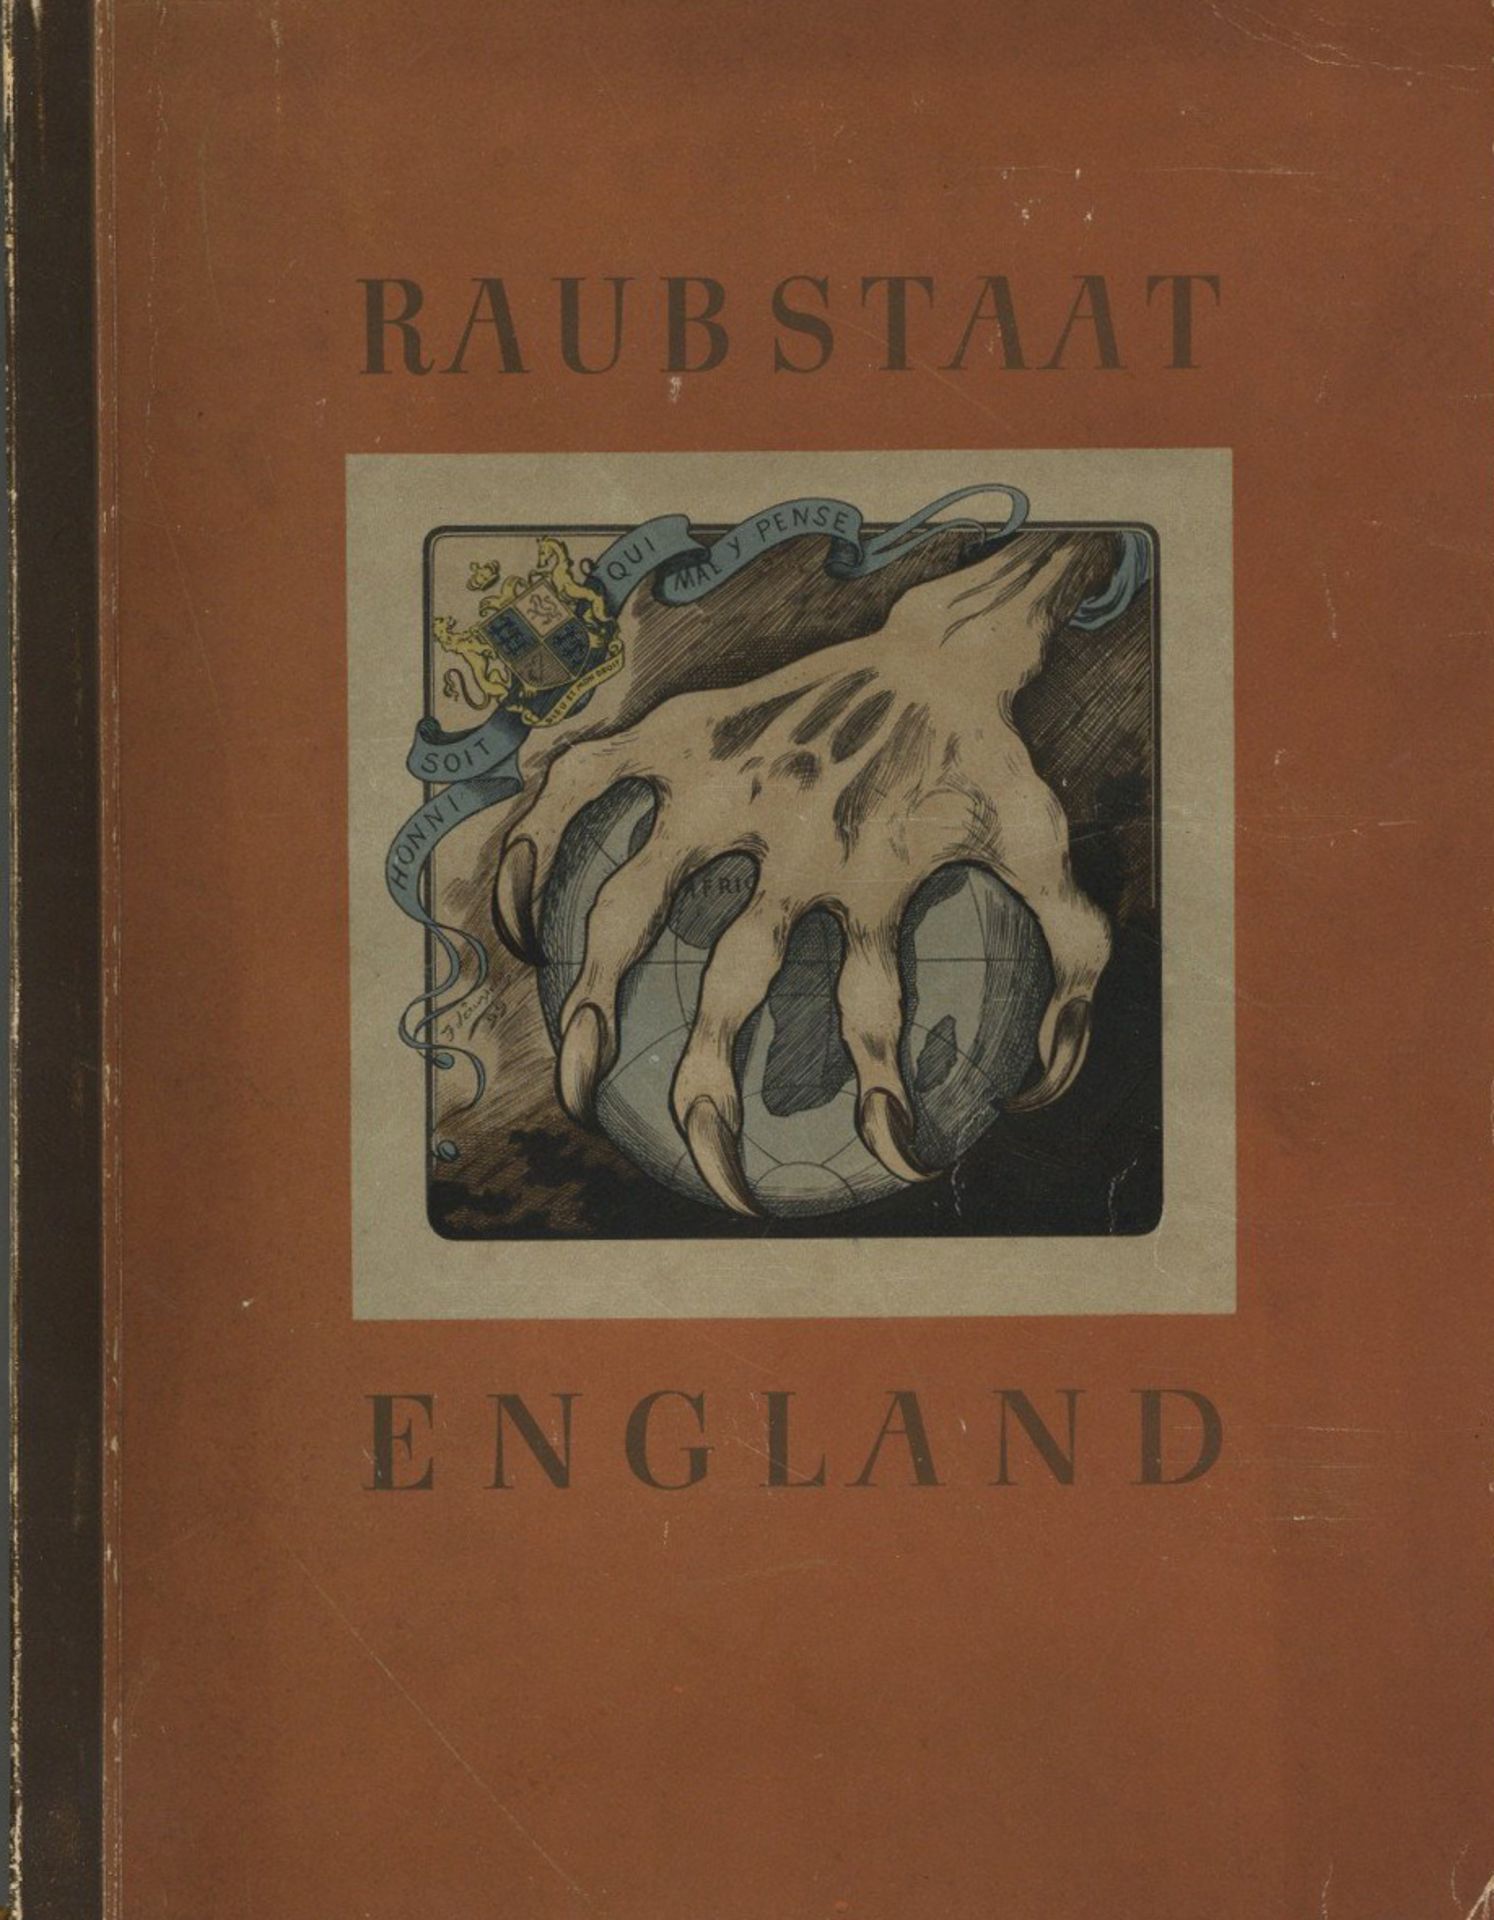 Sammelbild-Album Raubstaat England vom Cigaretten-Bilderdienst Hamburg 1941, komplett auf 129 S. II